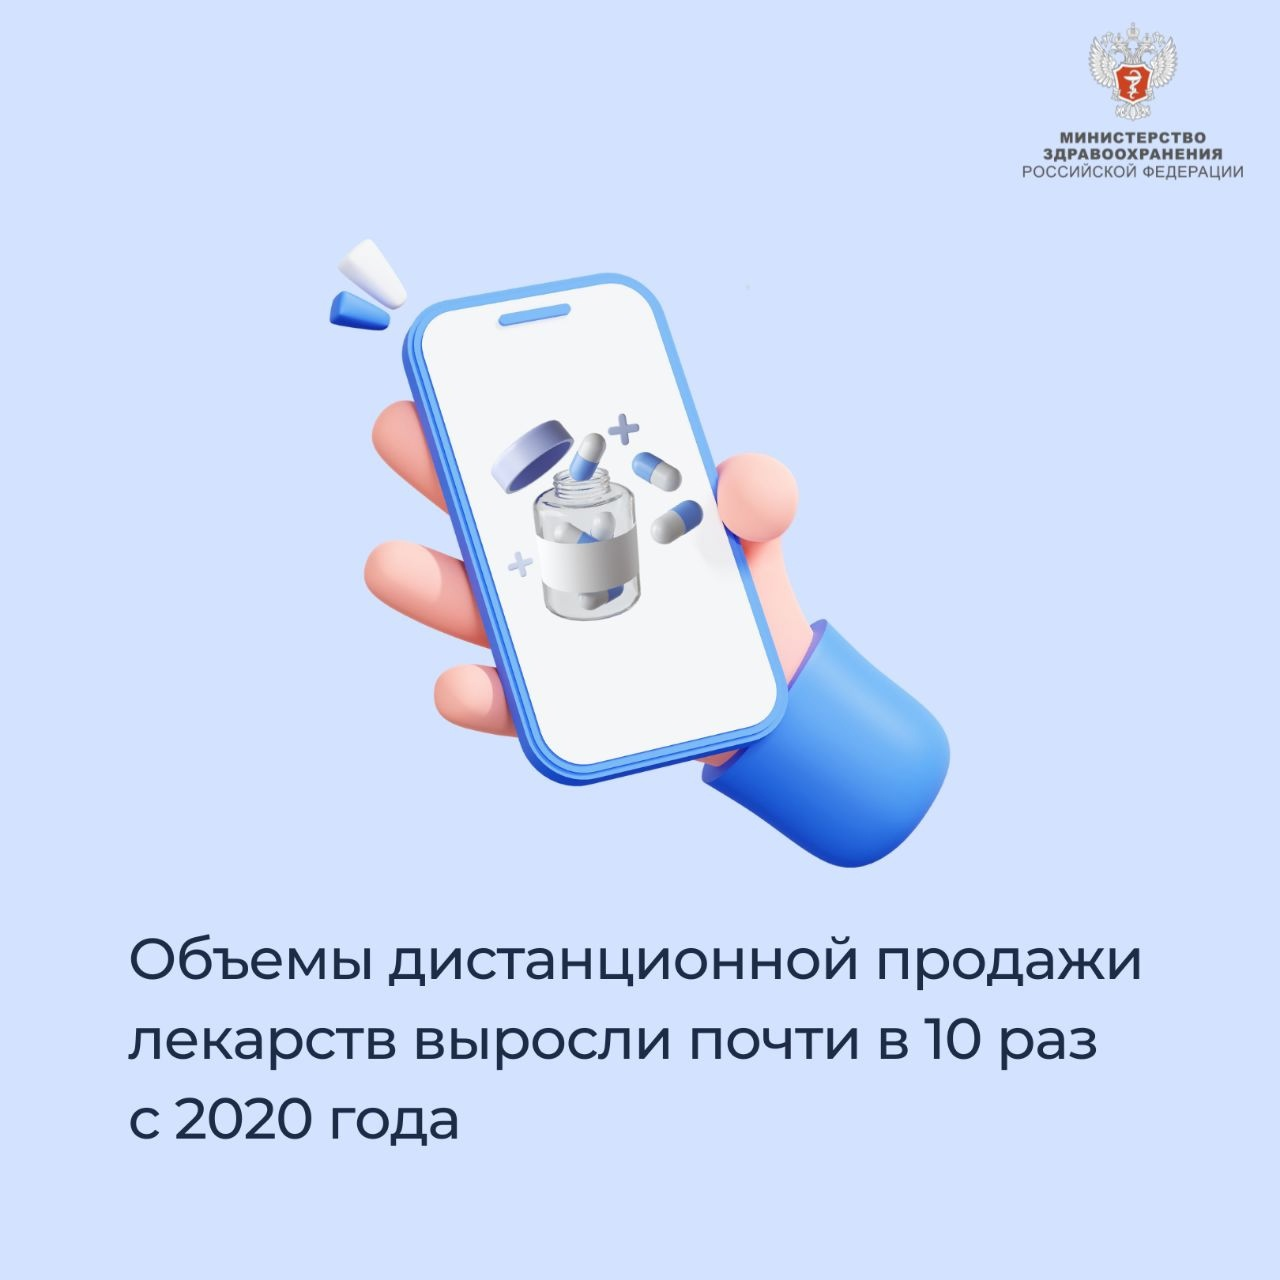 Объемы дистанционной продажи лекарств в России выросли почти в 10 раз с 2020 года